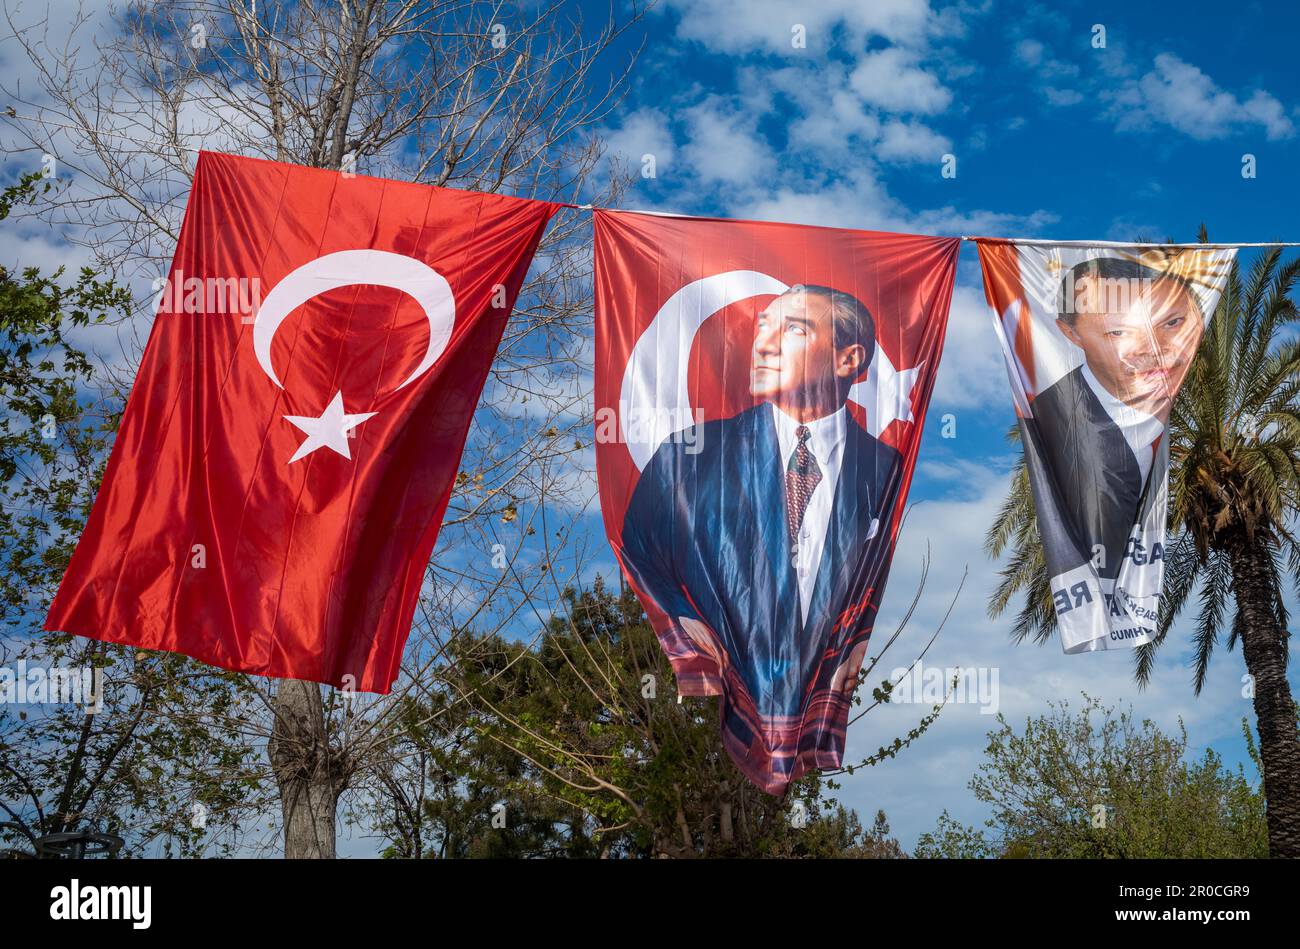 L'exposition de bannières et de drapeaux volant haut sur une corde contre un ciel bleu à Antalya, Turquie montre l'identité politique et nationale du pays. Banque D'Images